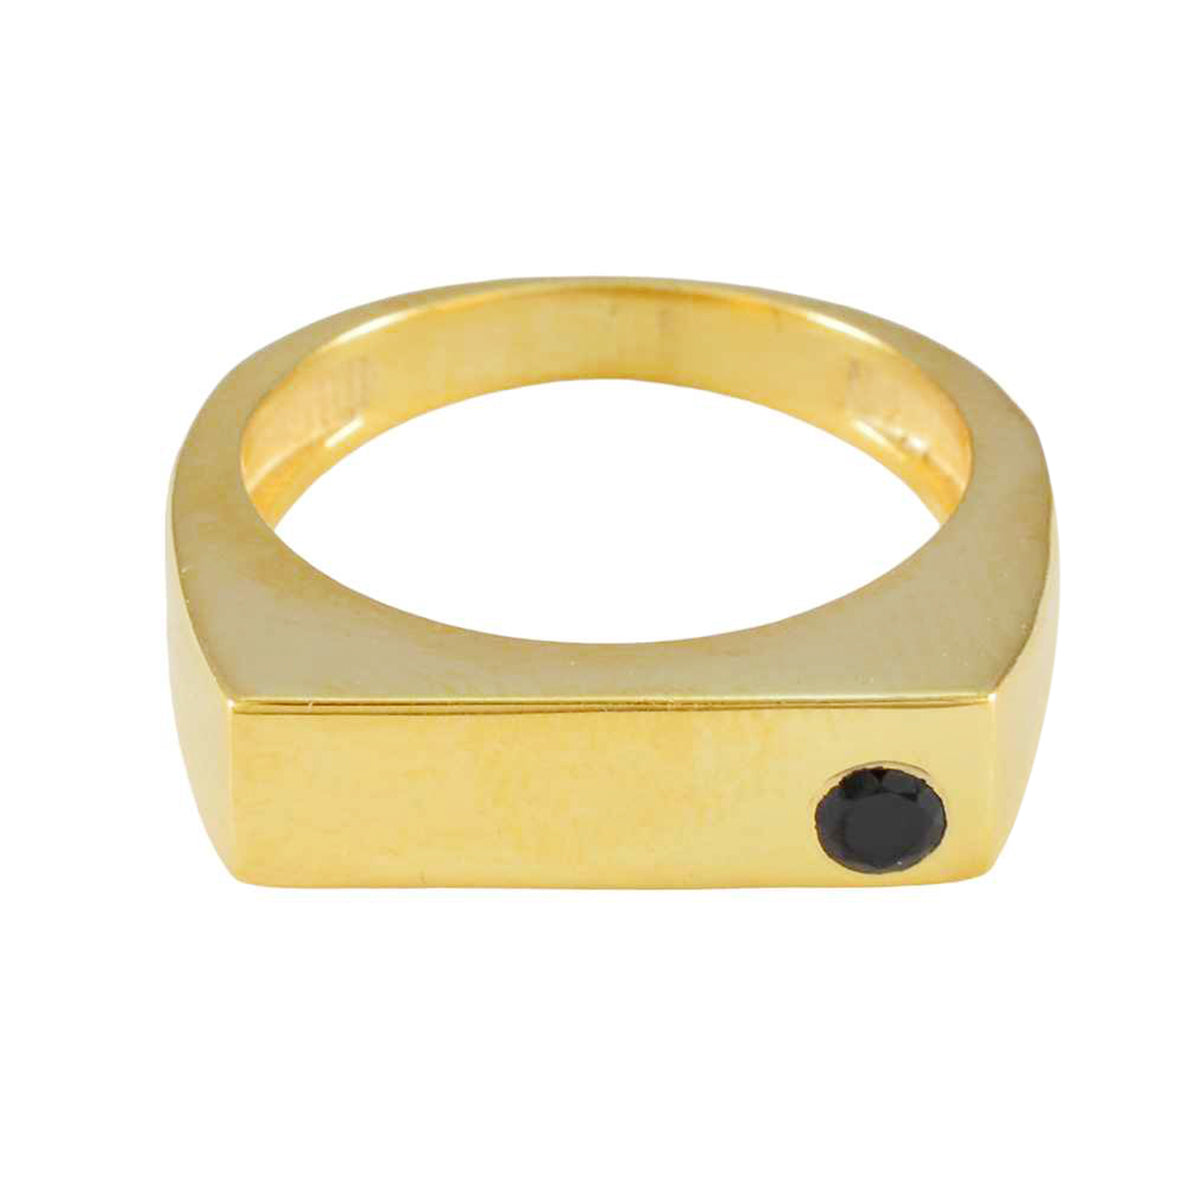 riyo perfekt silverring med gul guldplätering blå safirsten rund form infattning eleganta smycken svart fredag ring